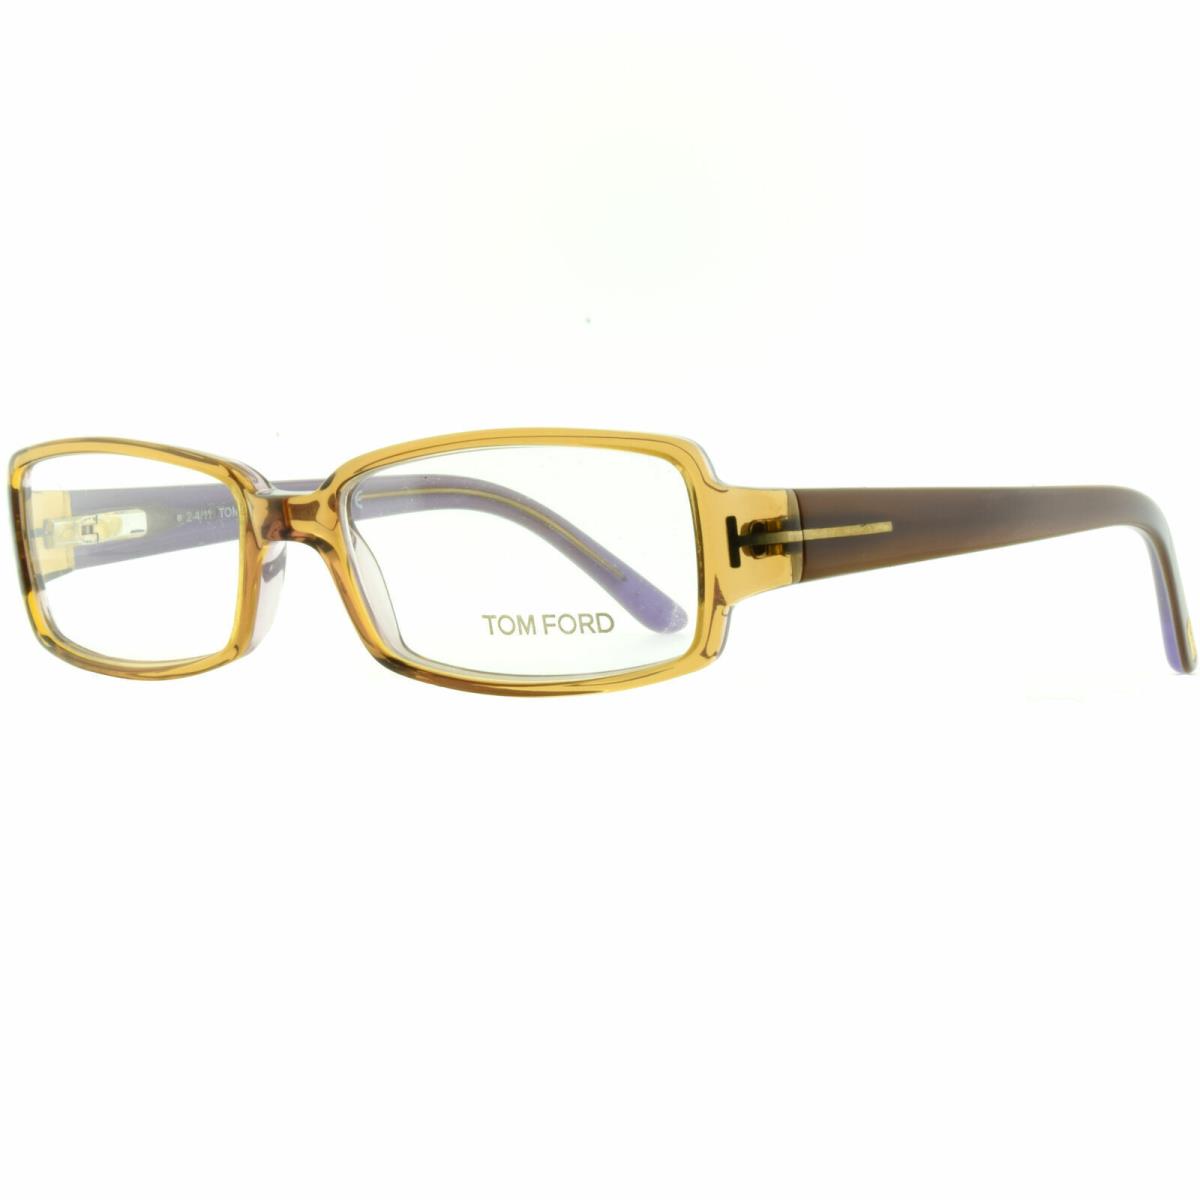 Tom Ford FT5185 050 Gold / Brown Rectangular Optical Frames Eyeglasses